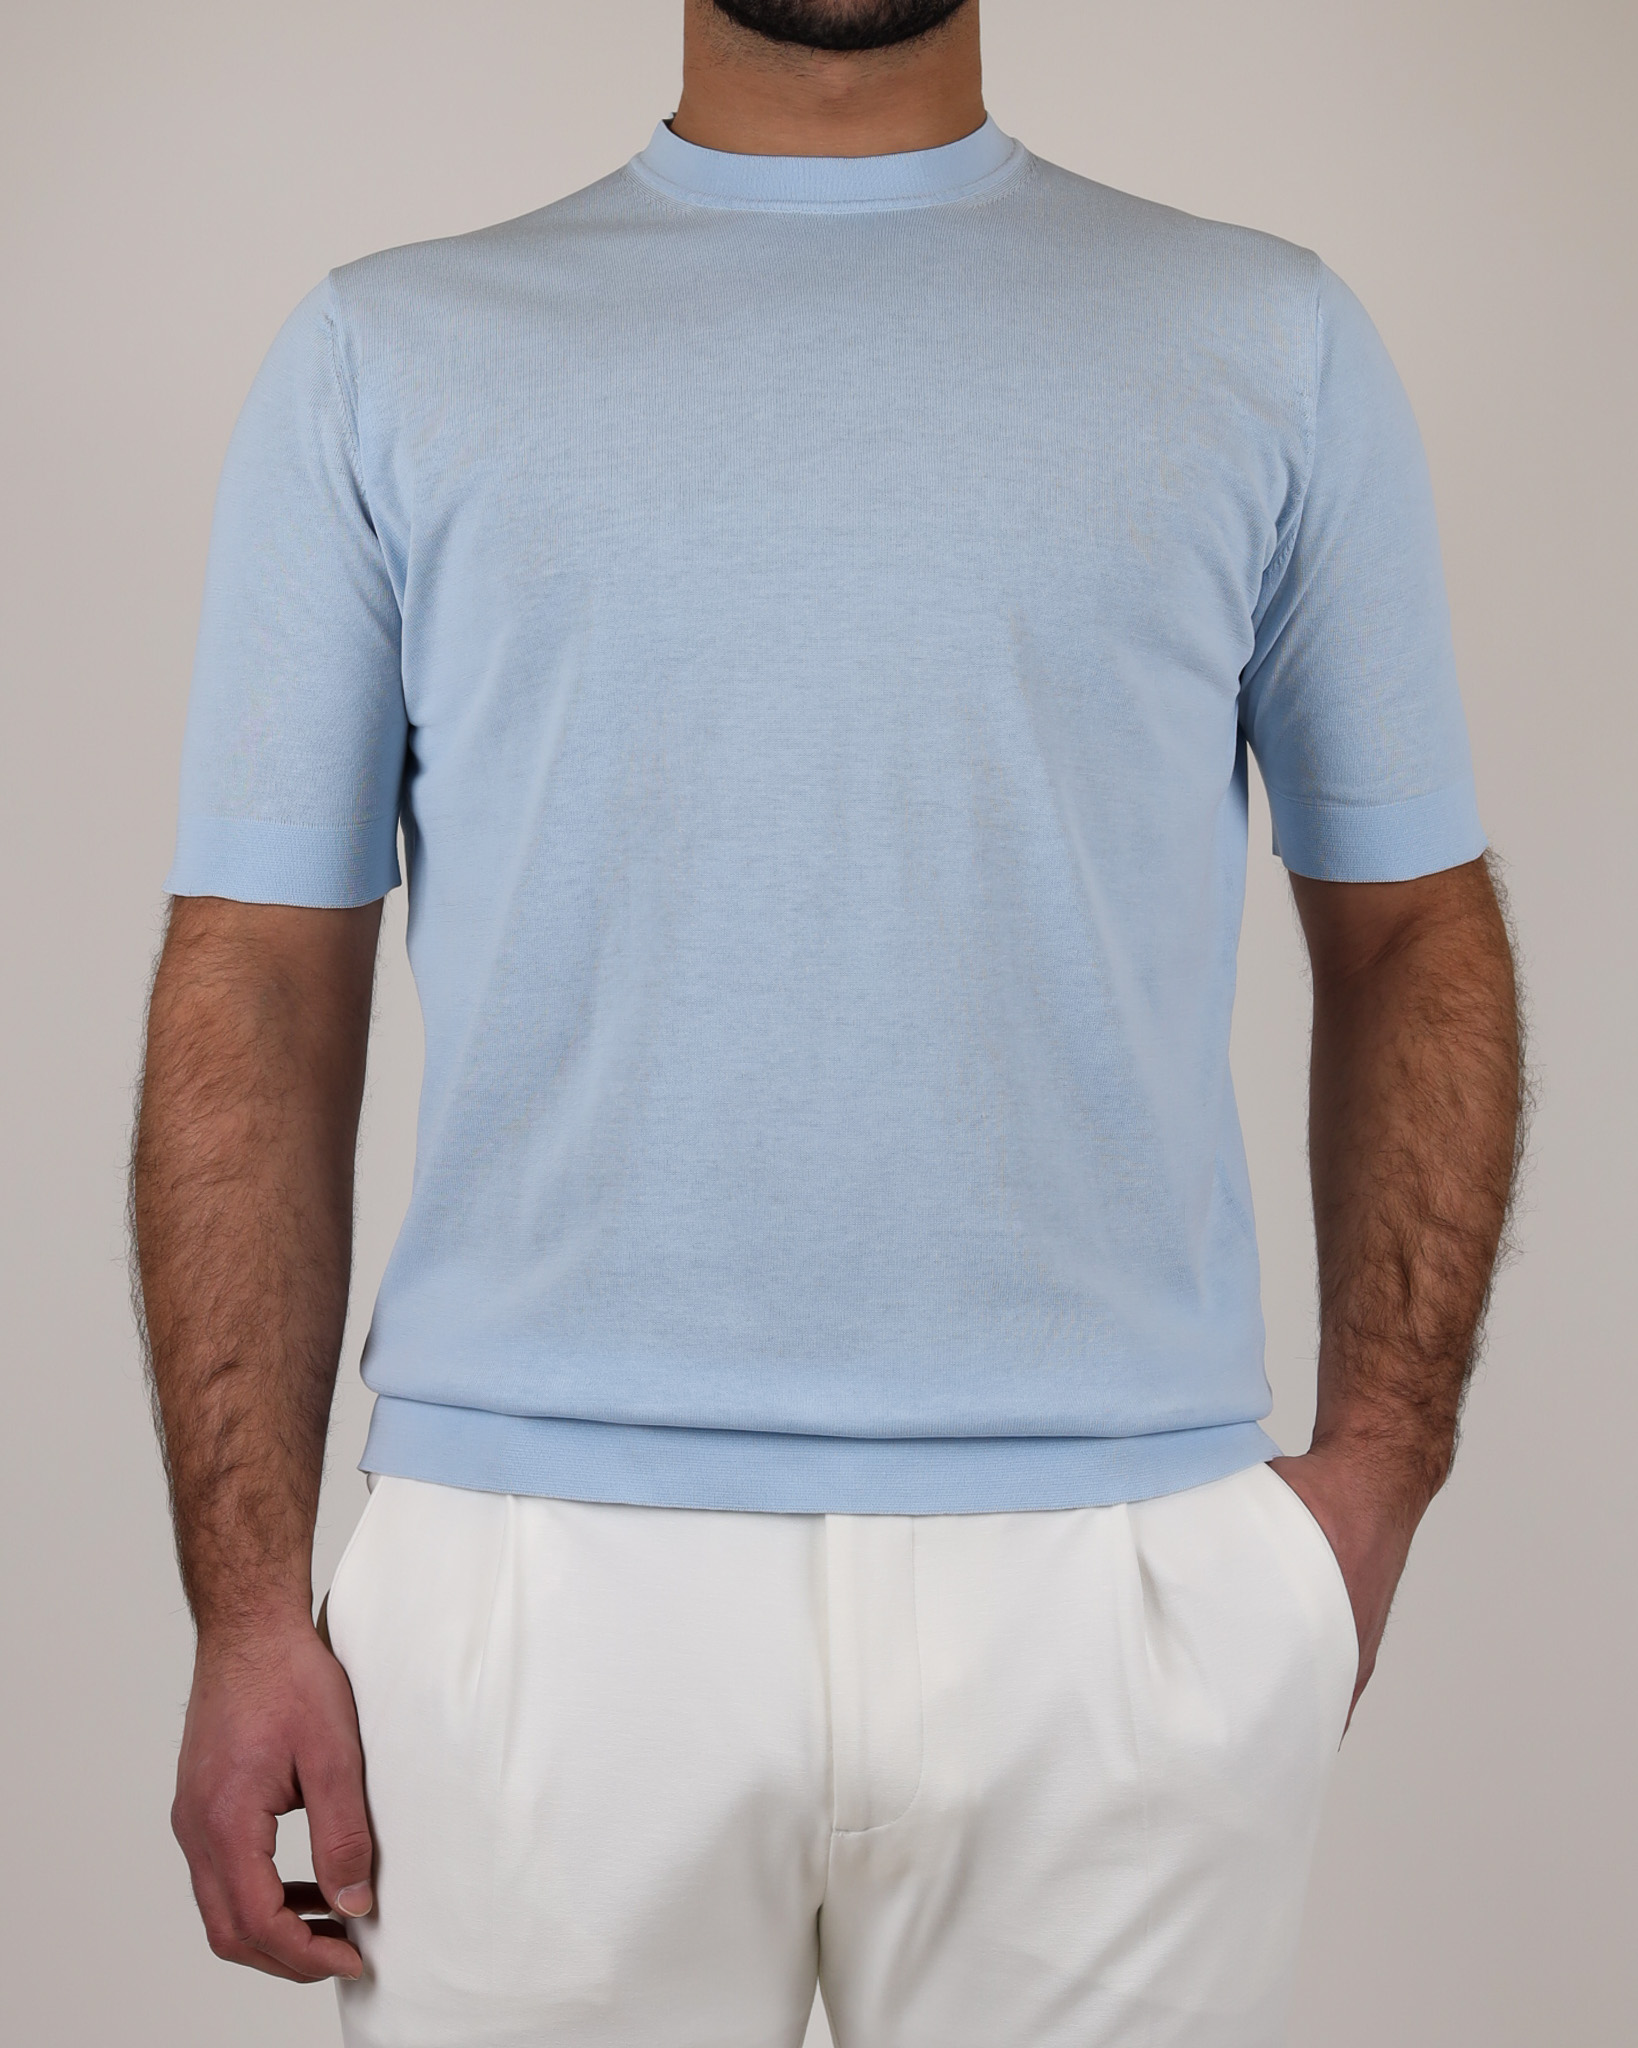 zgander_filippo_de_laurentiis_knitted_t_shirt_crepe_cotton_light_blue-1